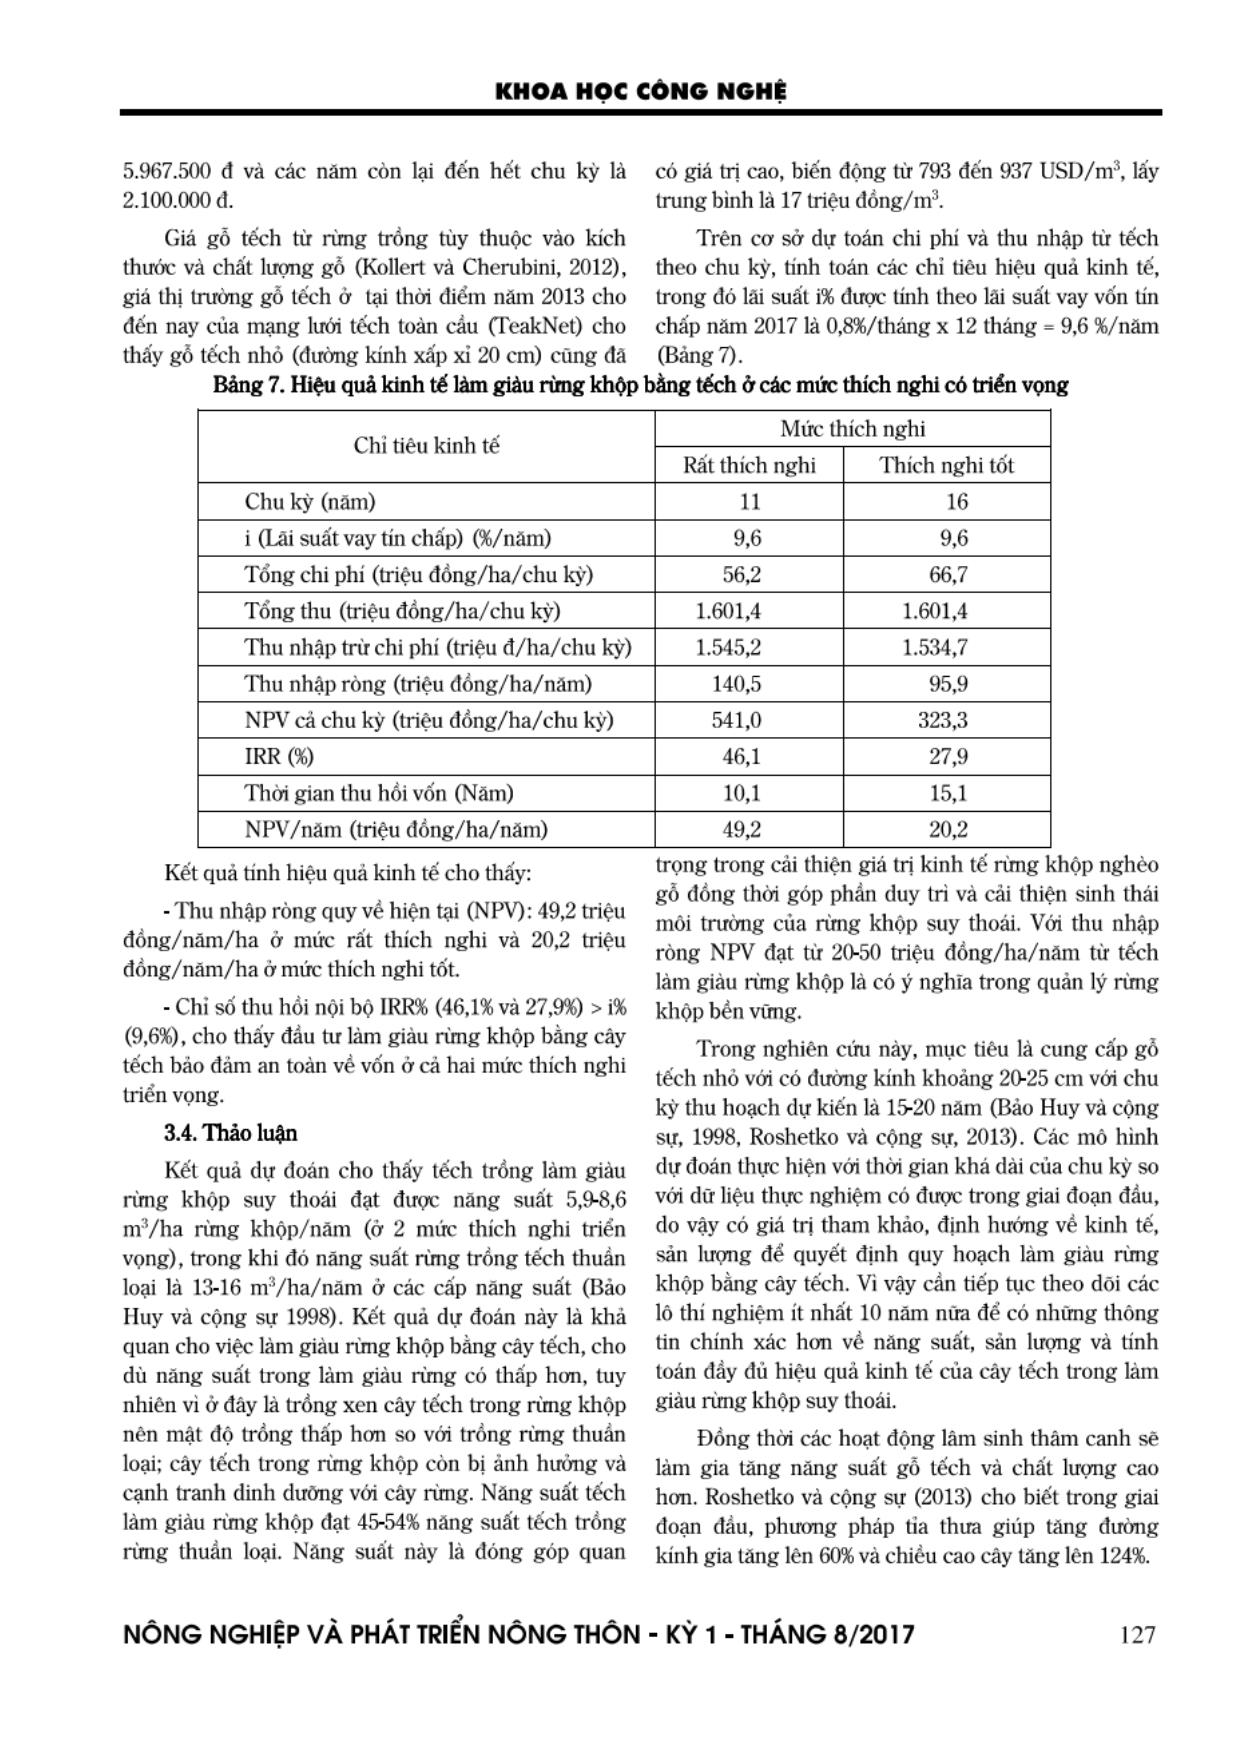 Dự đoán năng suất và hiệu quả kinh tế của cây tếch (Tectona grandis L.F.) trong làm giàu rùng khộp suy thoái trang 9